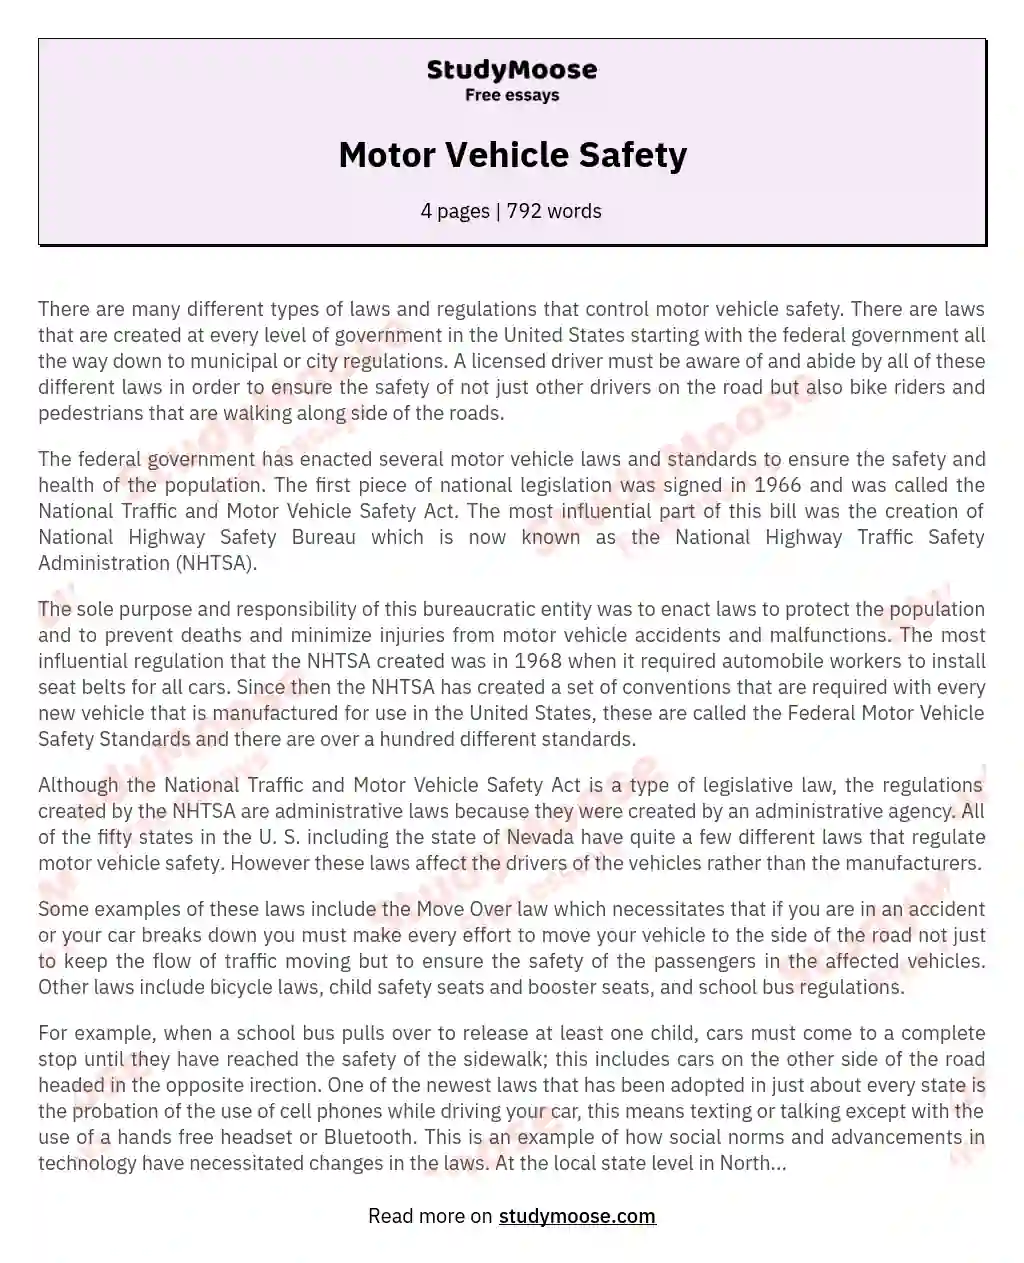 Motor Vehicle Safety essay